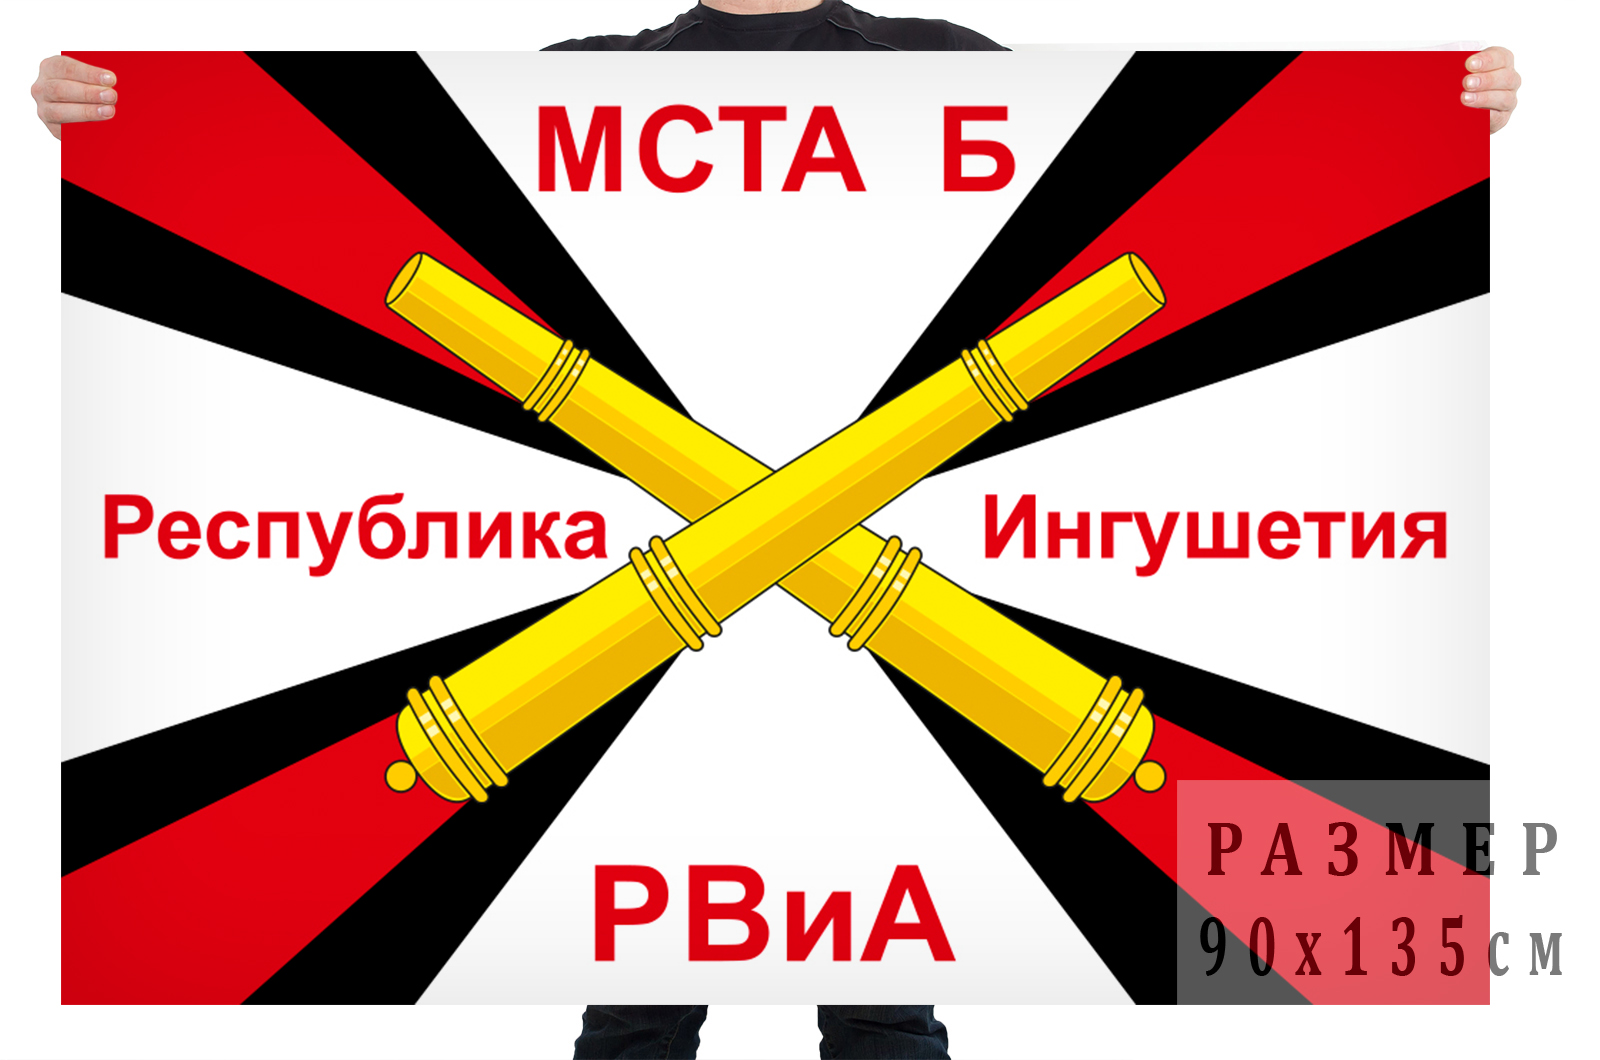 Купить в Москве флаг РВиА Мста-Б республика Ингушетия